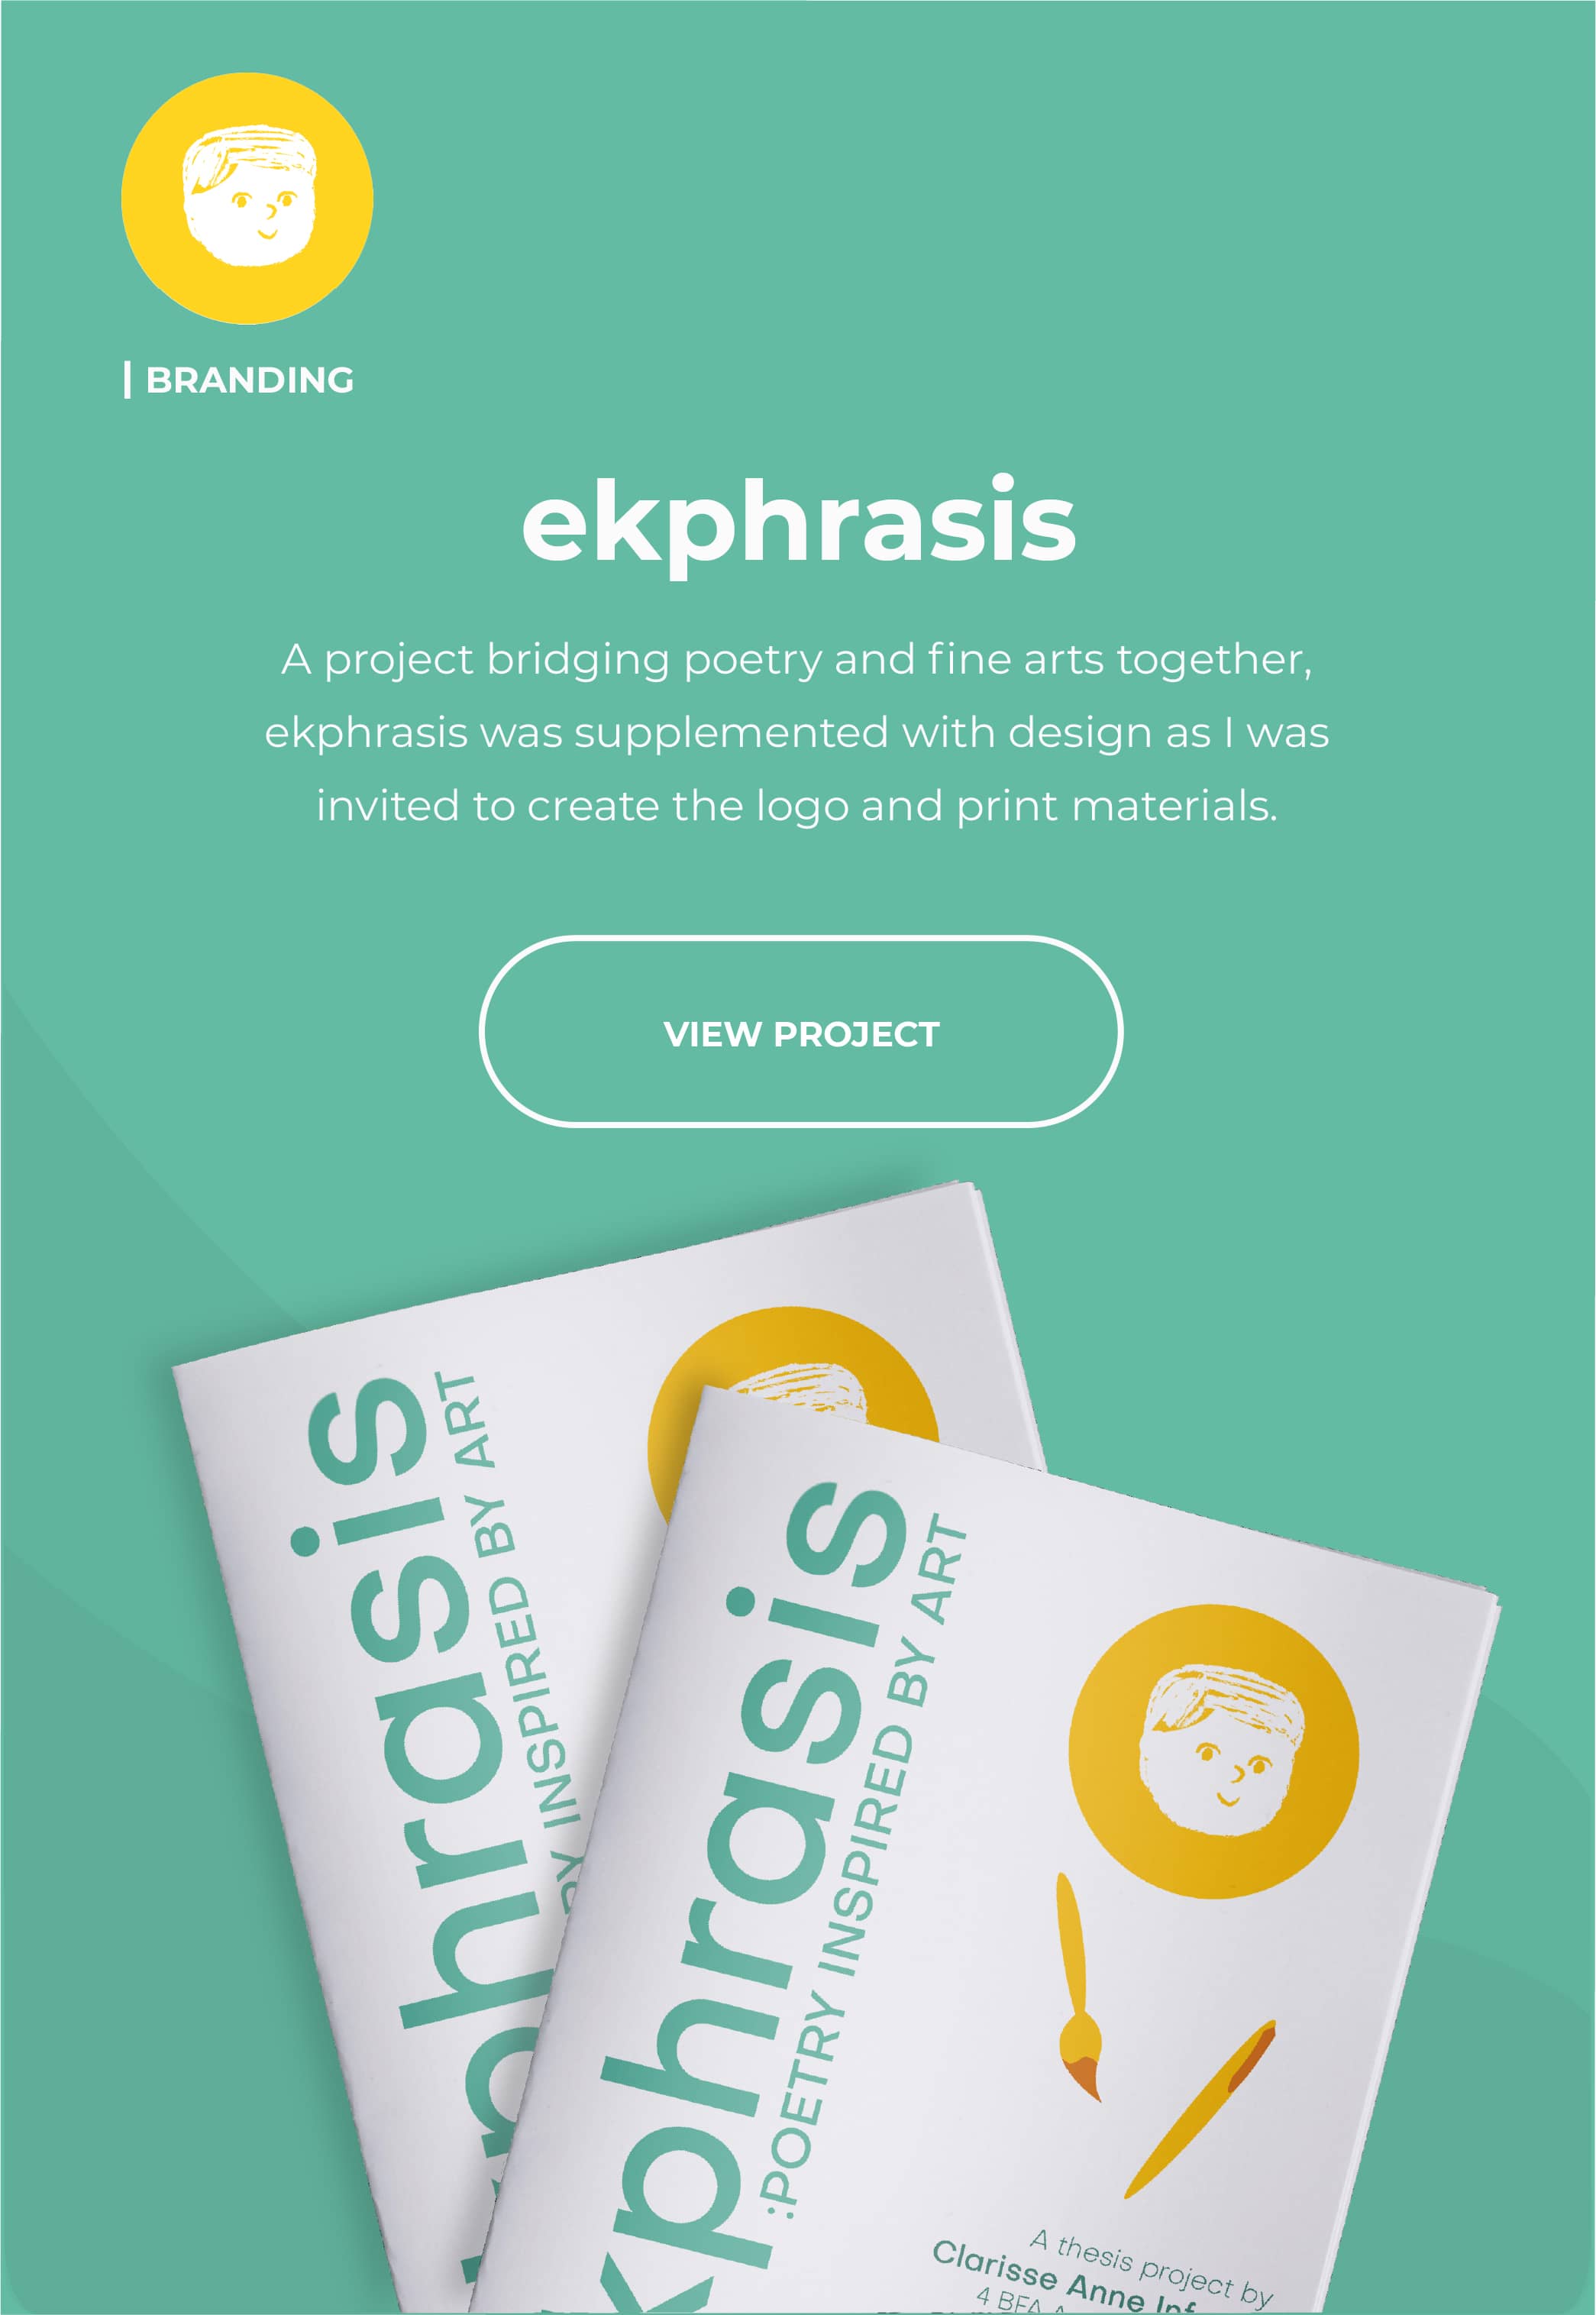 Read about ekphrasis